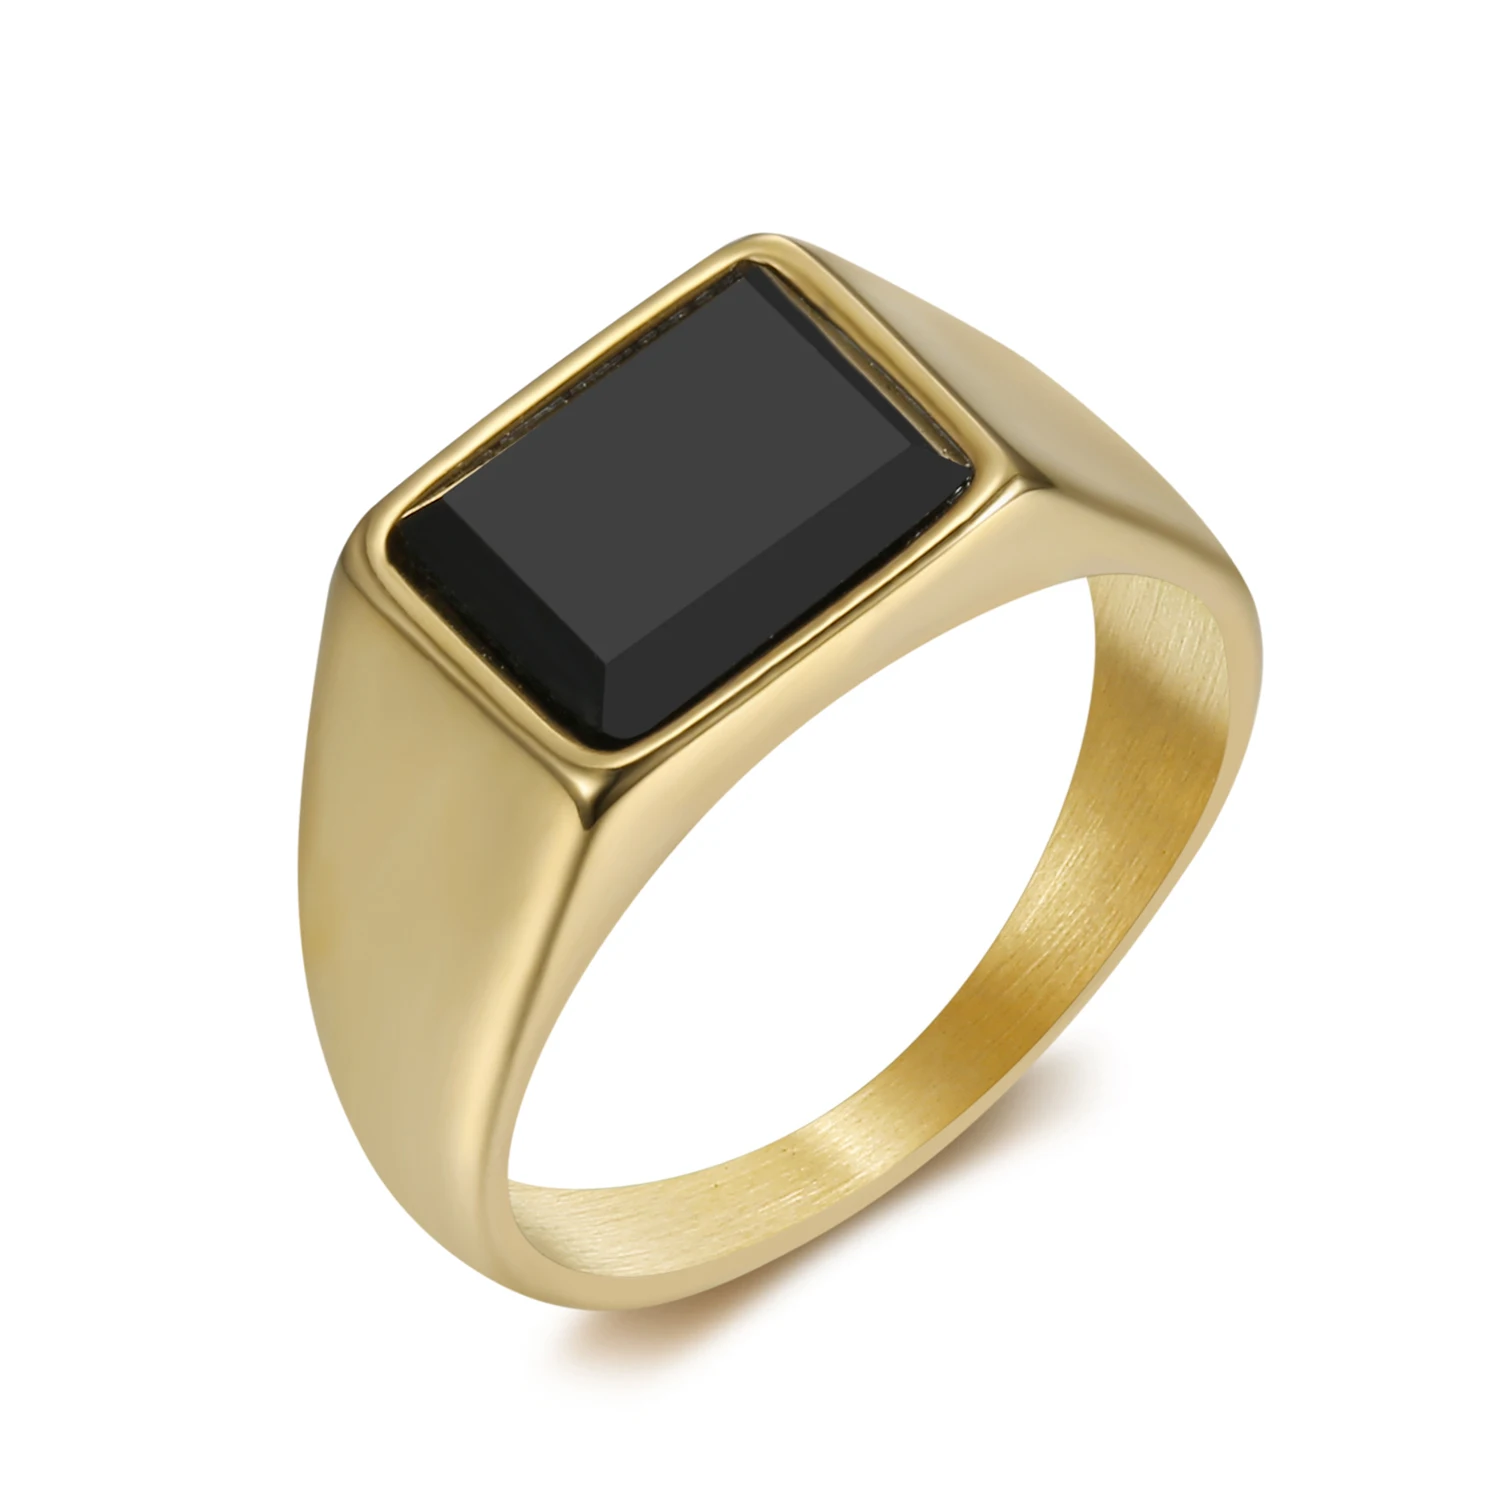 

OEM ODM custom design 316 stainless steel golden ring with black stone for men women, Silver, gold